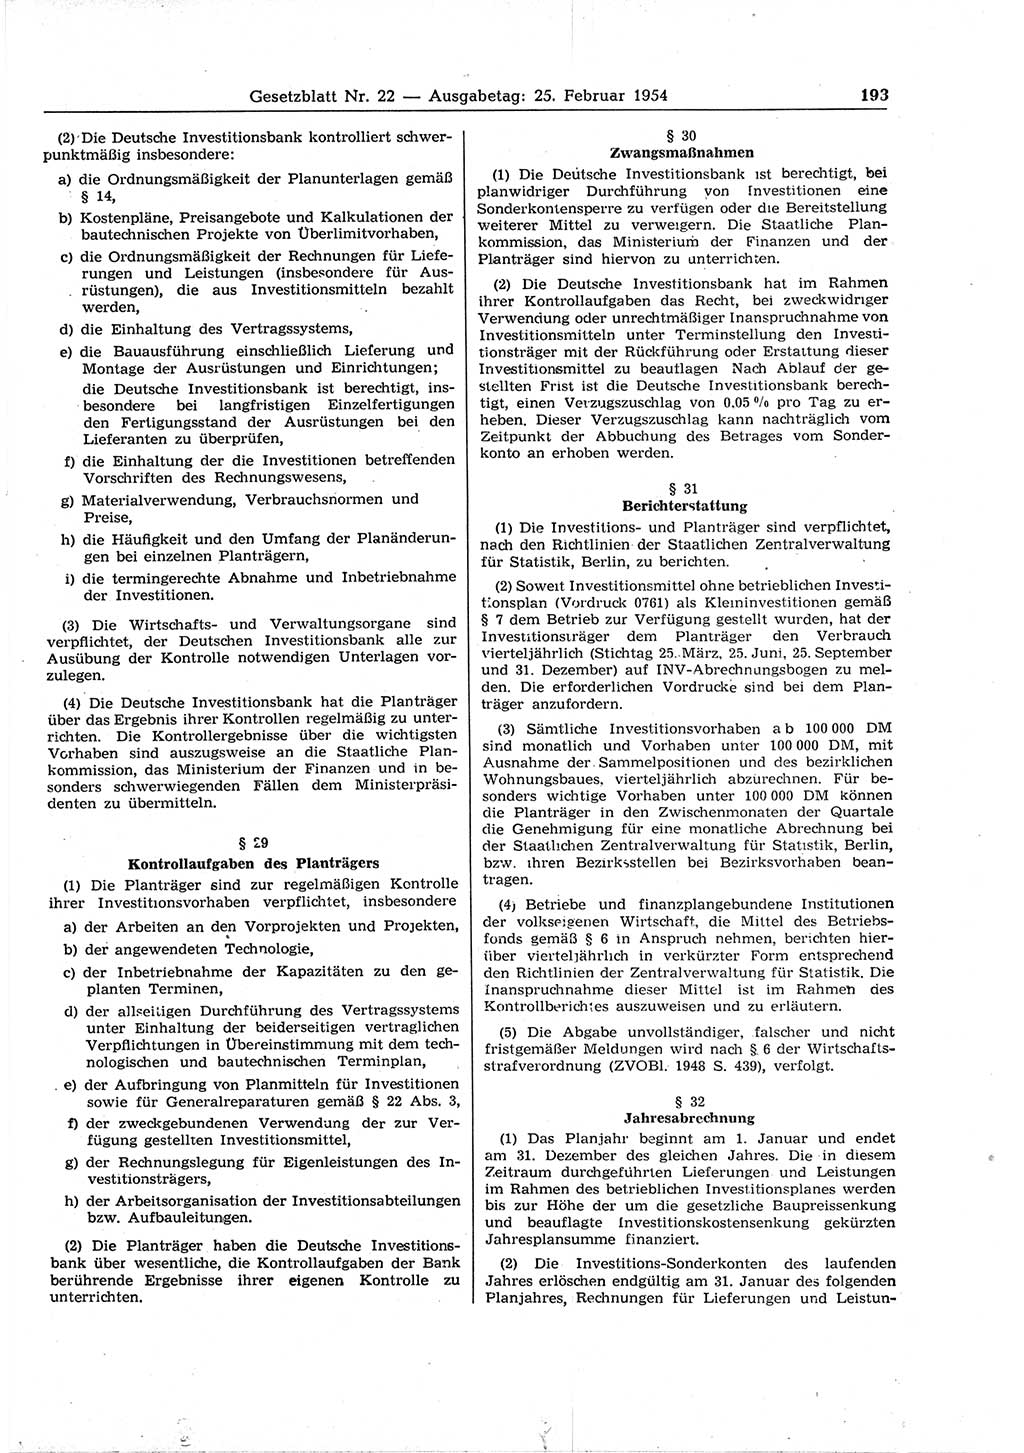 Gesetzblatt (GBl.) der Deutschen Demokratischen Republik (DDR) 1954, Seite 193 (GBl. DDR 1954, S. 193)